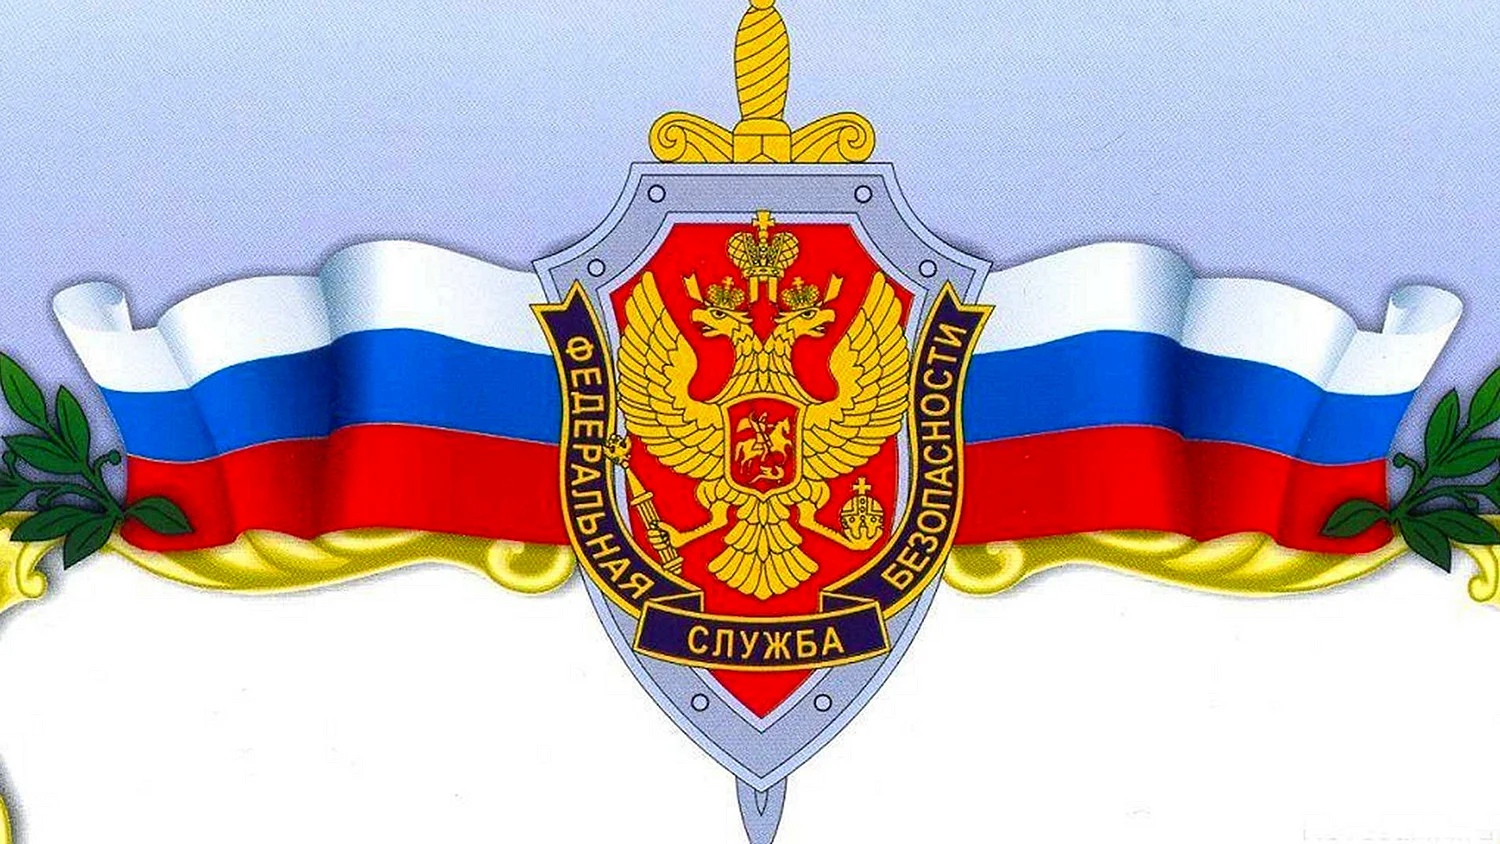 Эмблема ФСБ России